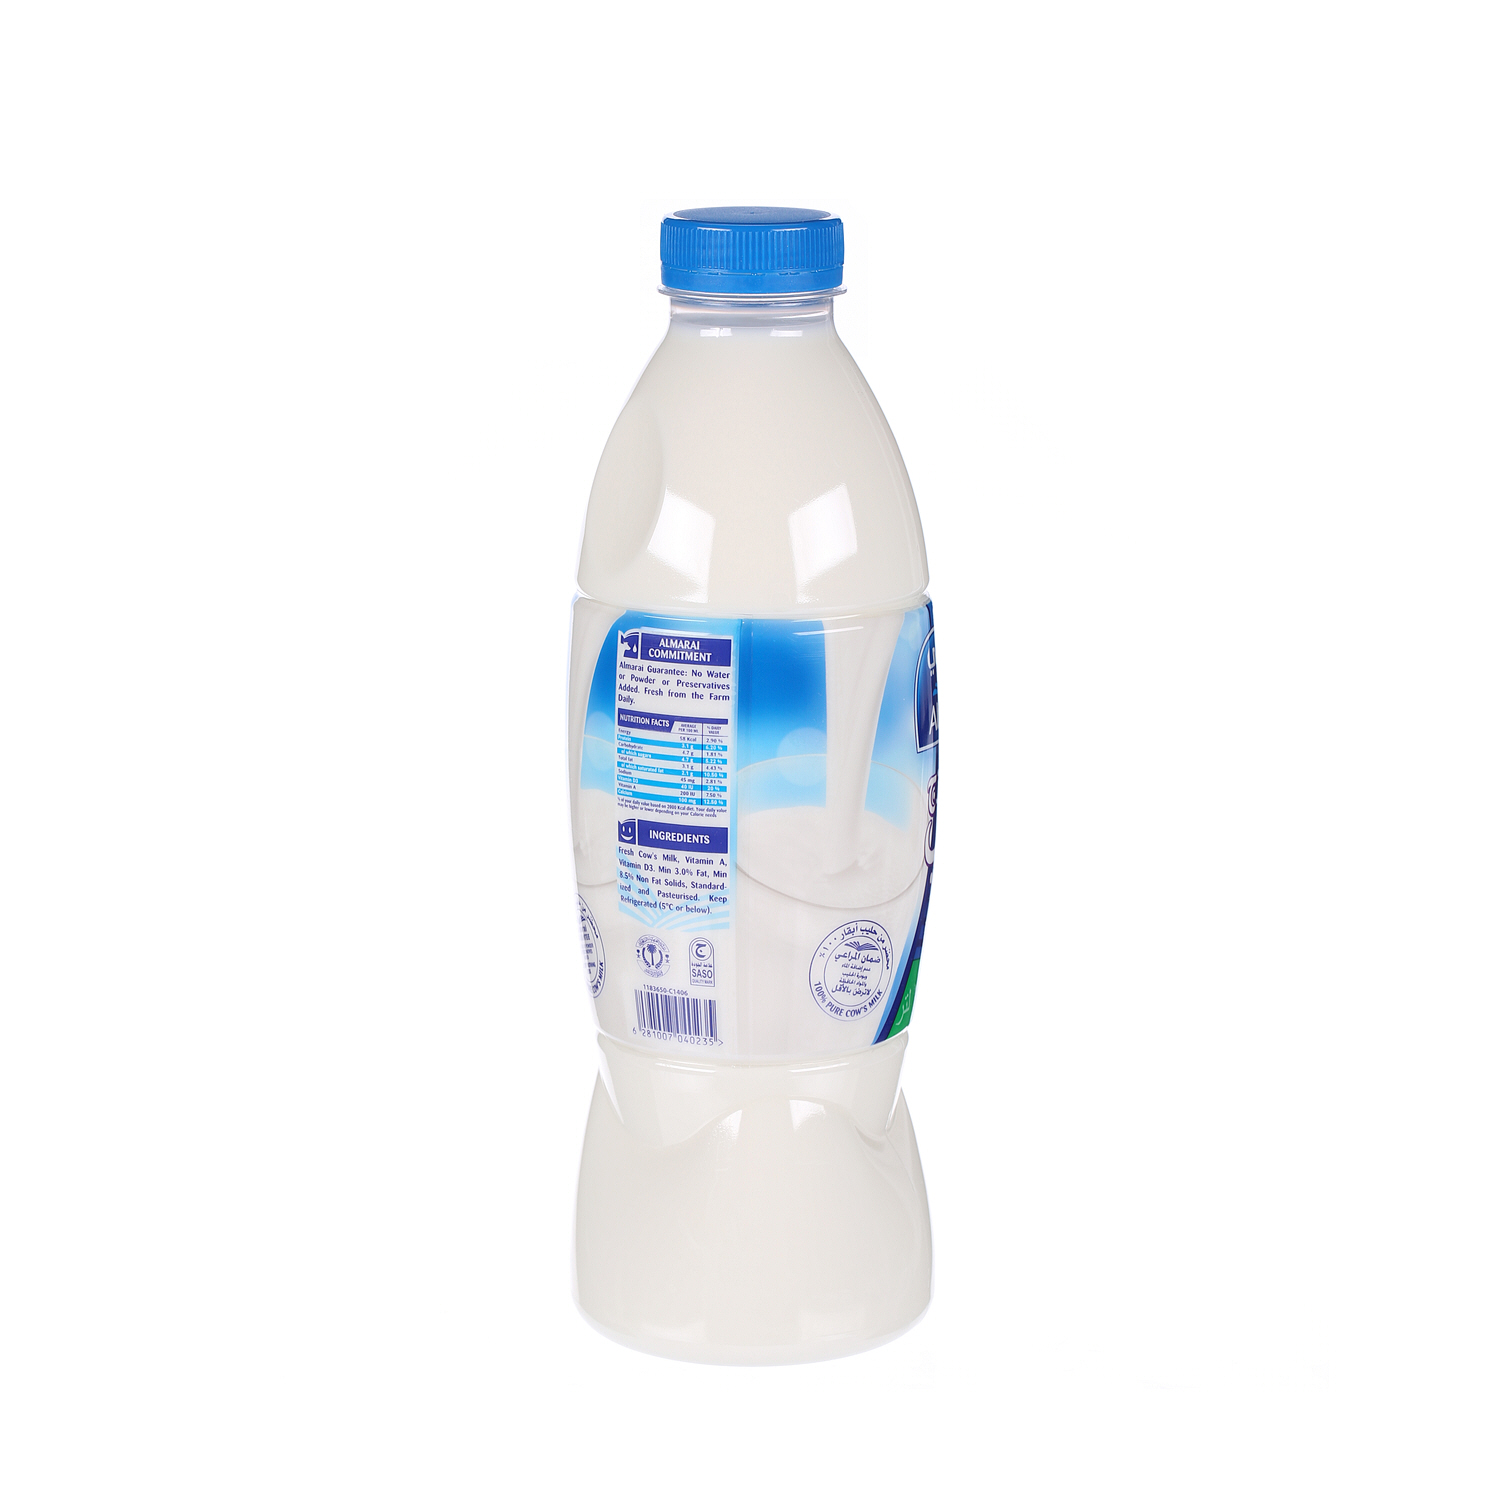 Al Marai Fresh Milk Full Fat 1 L